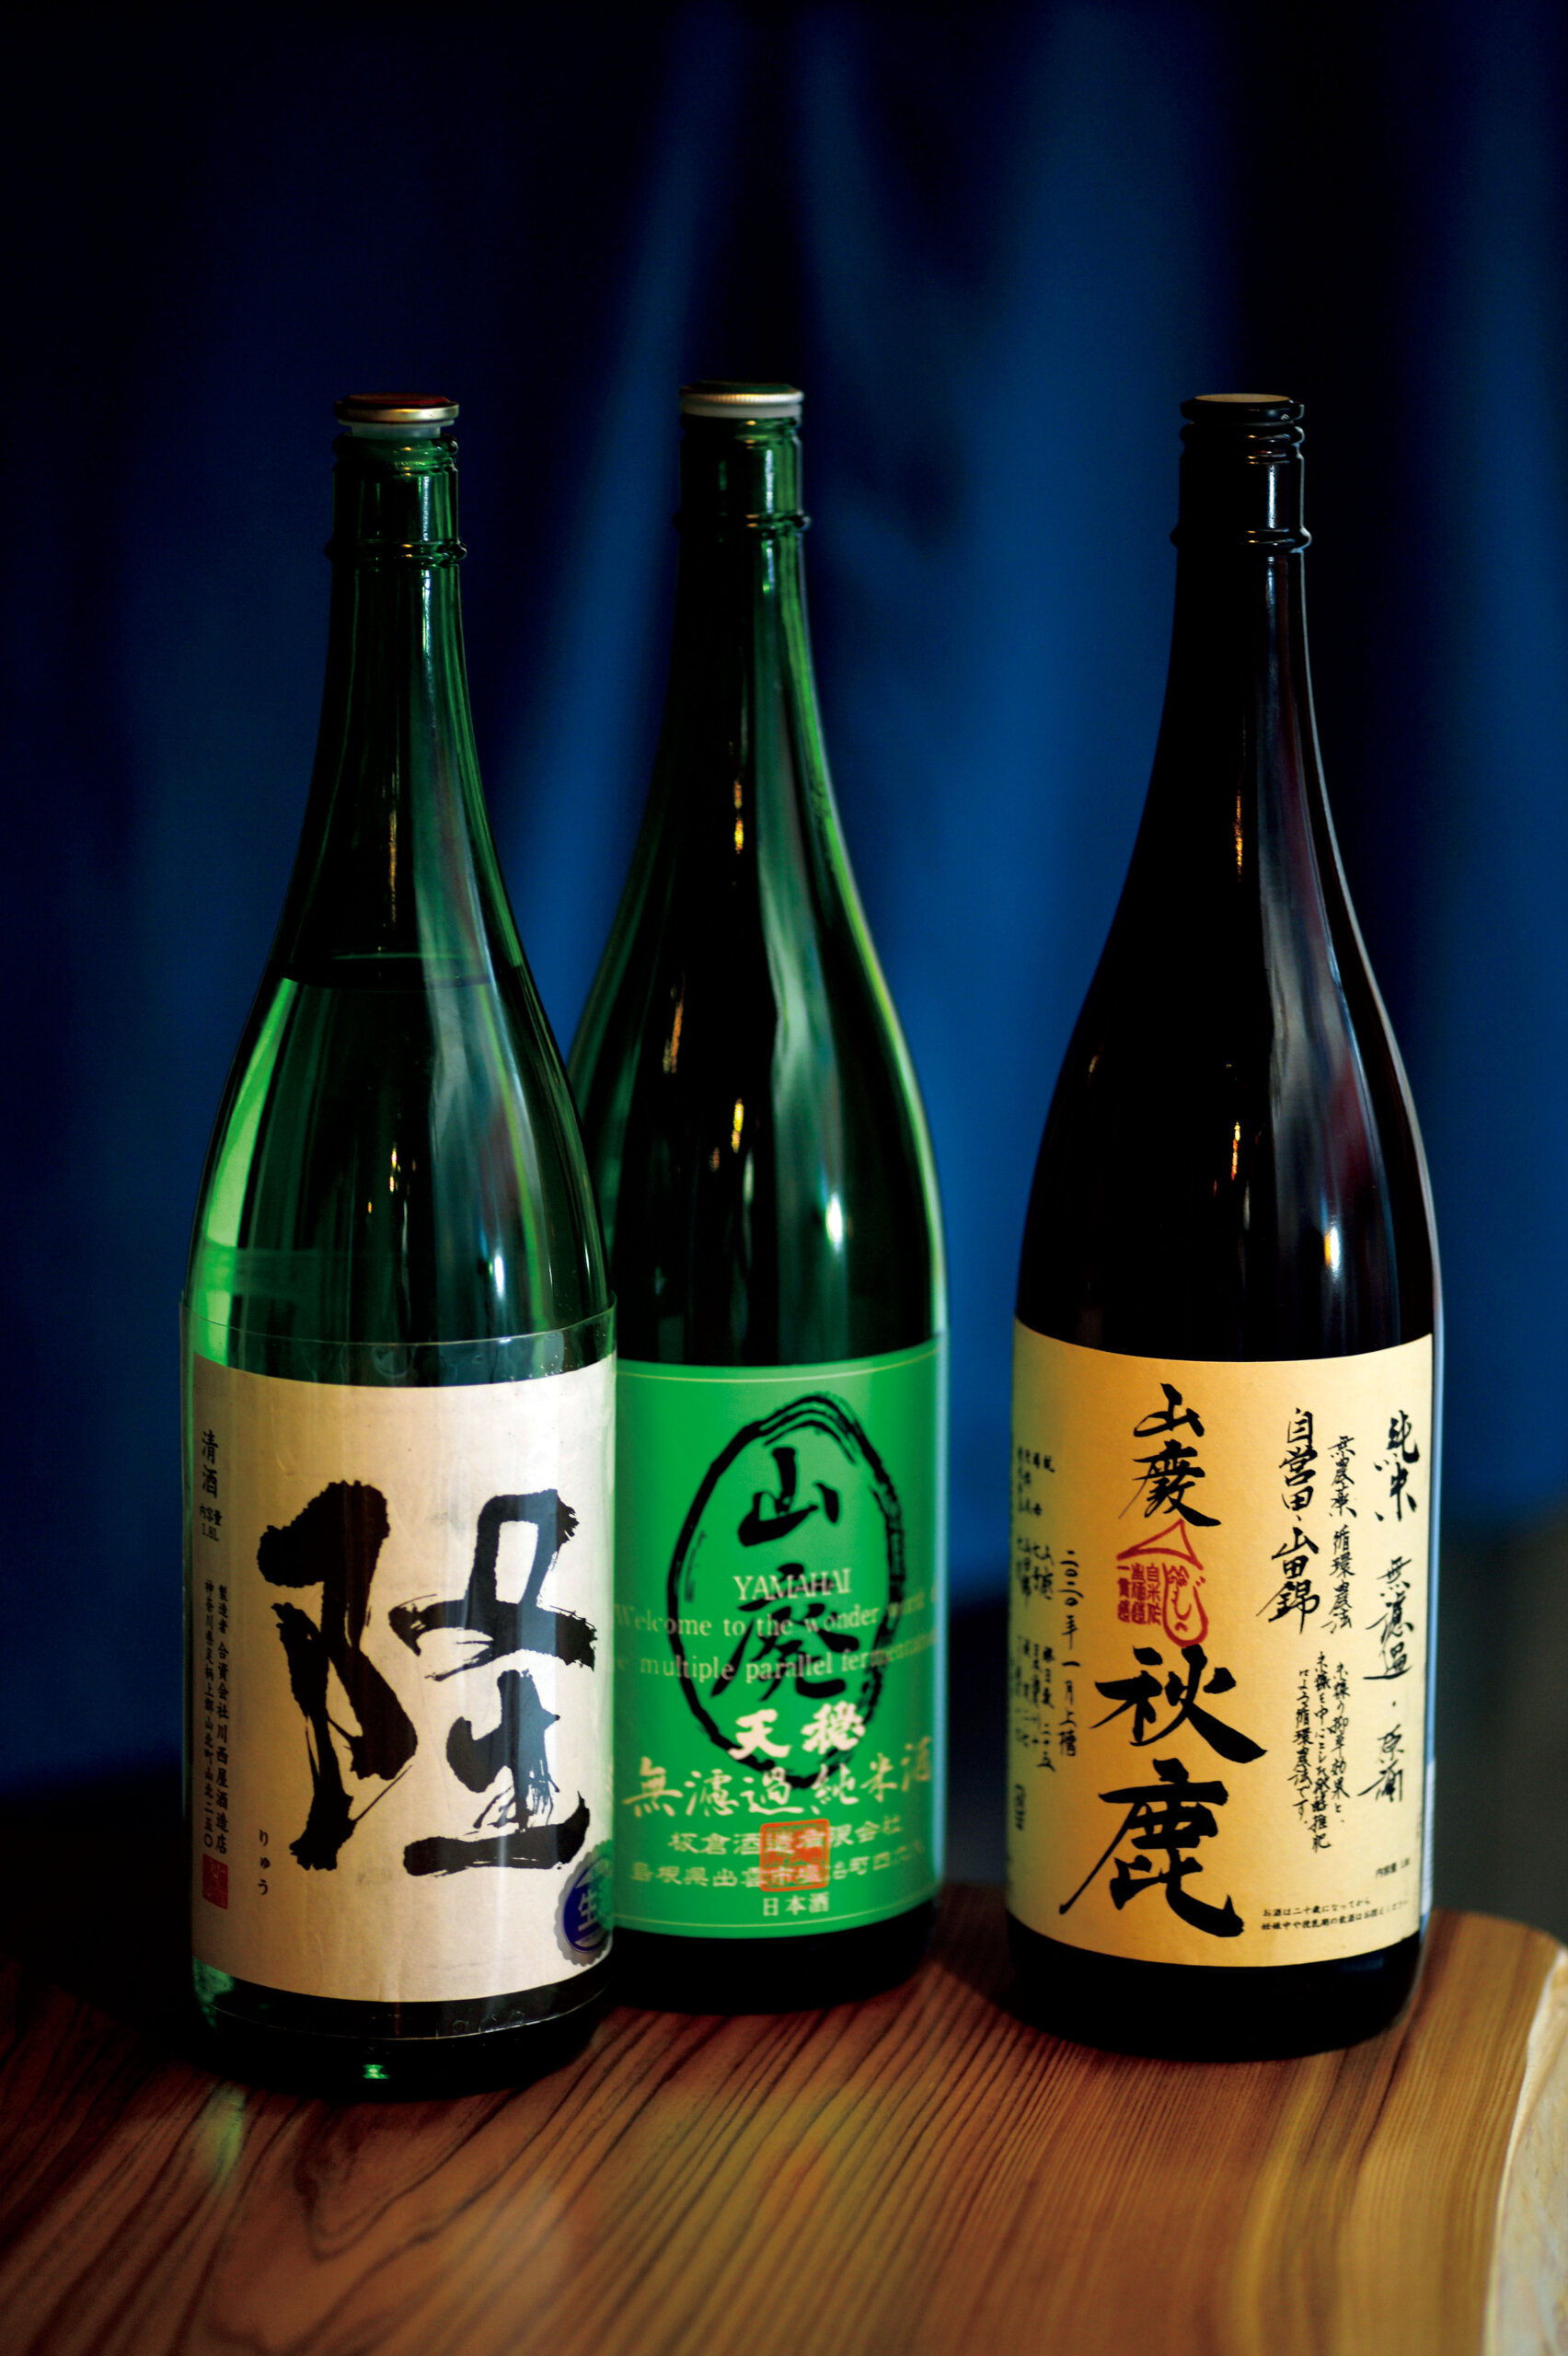 味わいのきれいな「村越シャモロック」を引き立てる、自然な造りでやわらかい味わいの日本酒が揃う